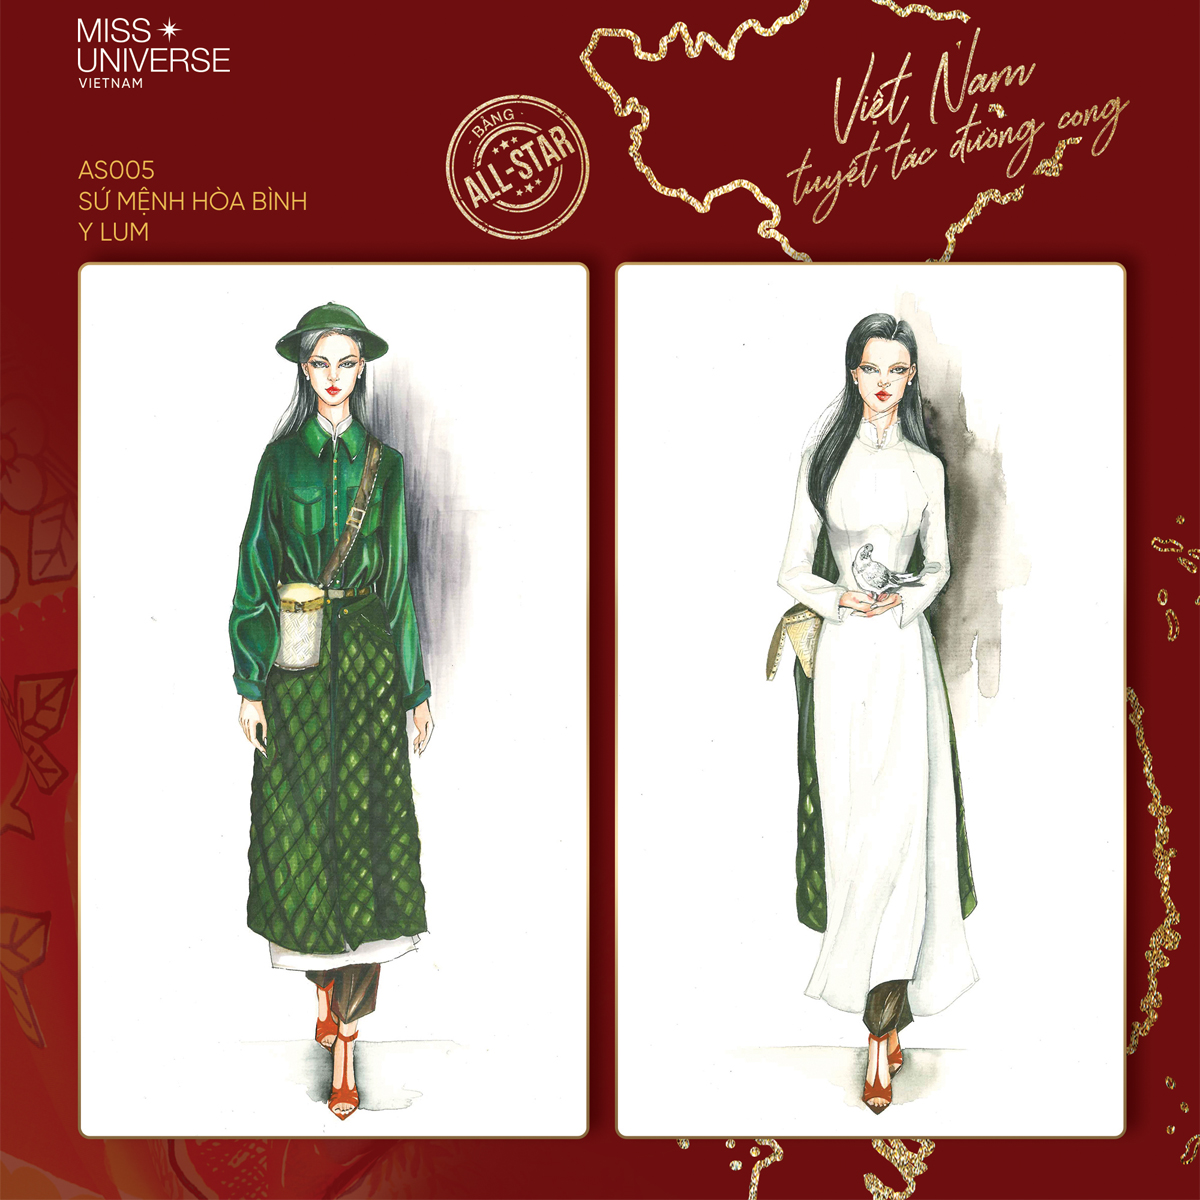 Áo dài truyền thống đã là một biểu tượng văn hoá và du lịch của Việt Nam. Với thiết kế tinh tế, nữ tính, áo dài truyền thống kéo dài được từ nhiều thế kỷ vẫn giữ nguyên được giá trị của nó. Hãy xem hình ảnh để cảm nhận sự thanh lịch và sang trọng của chiếc áo dài Việt Nam.